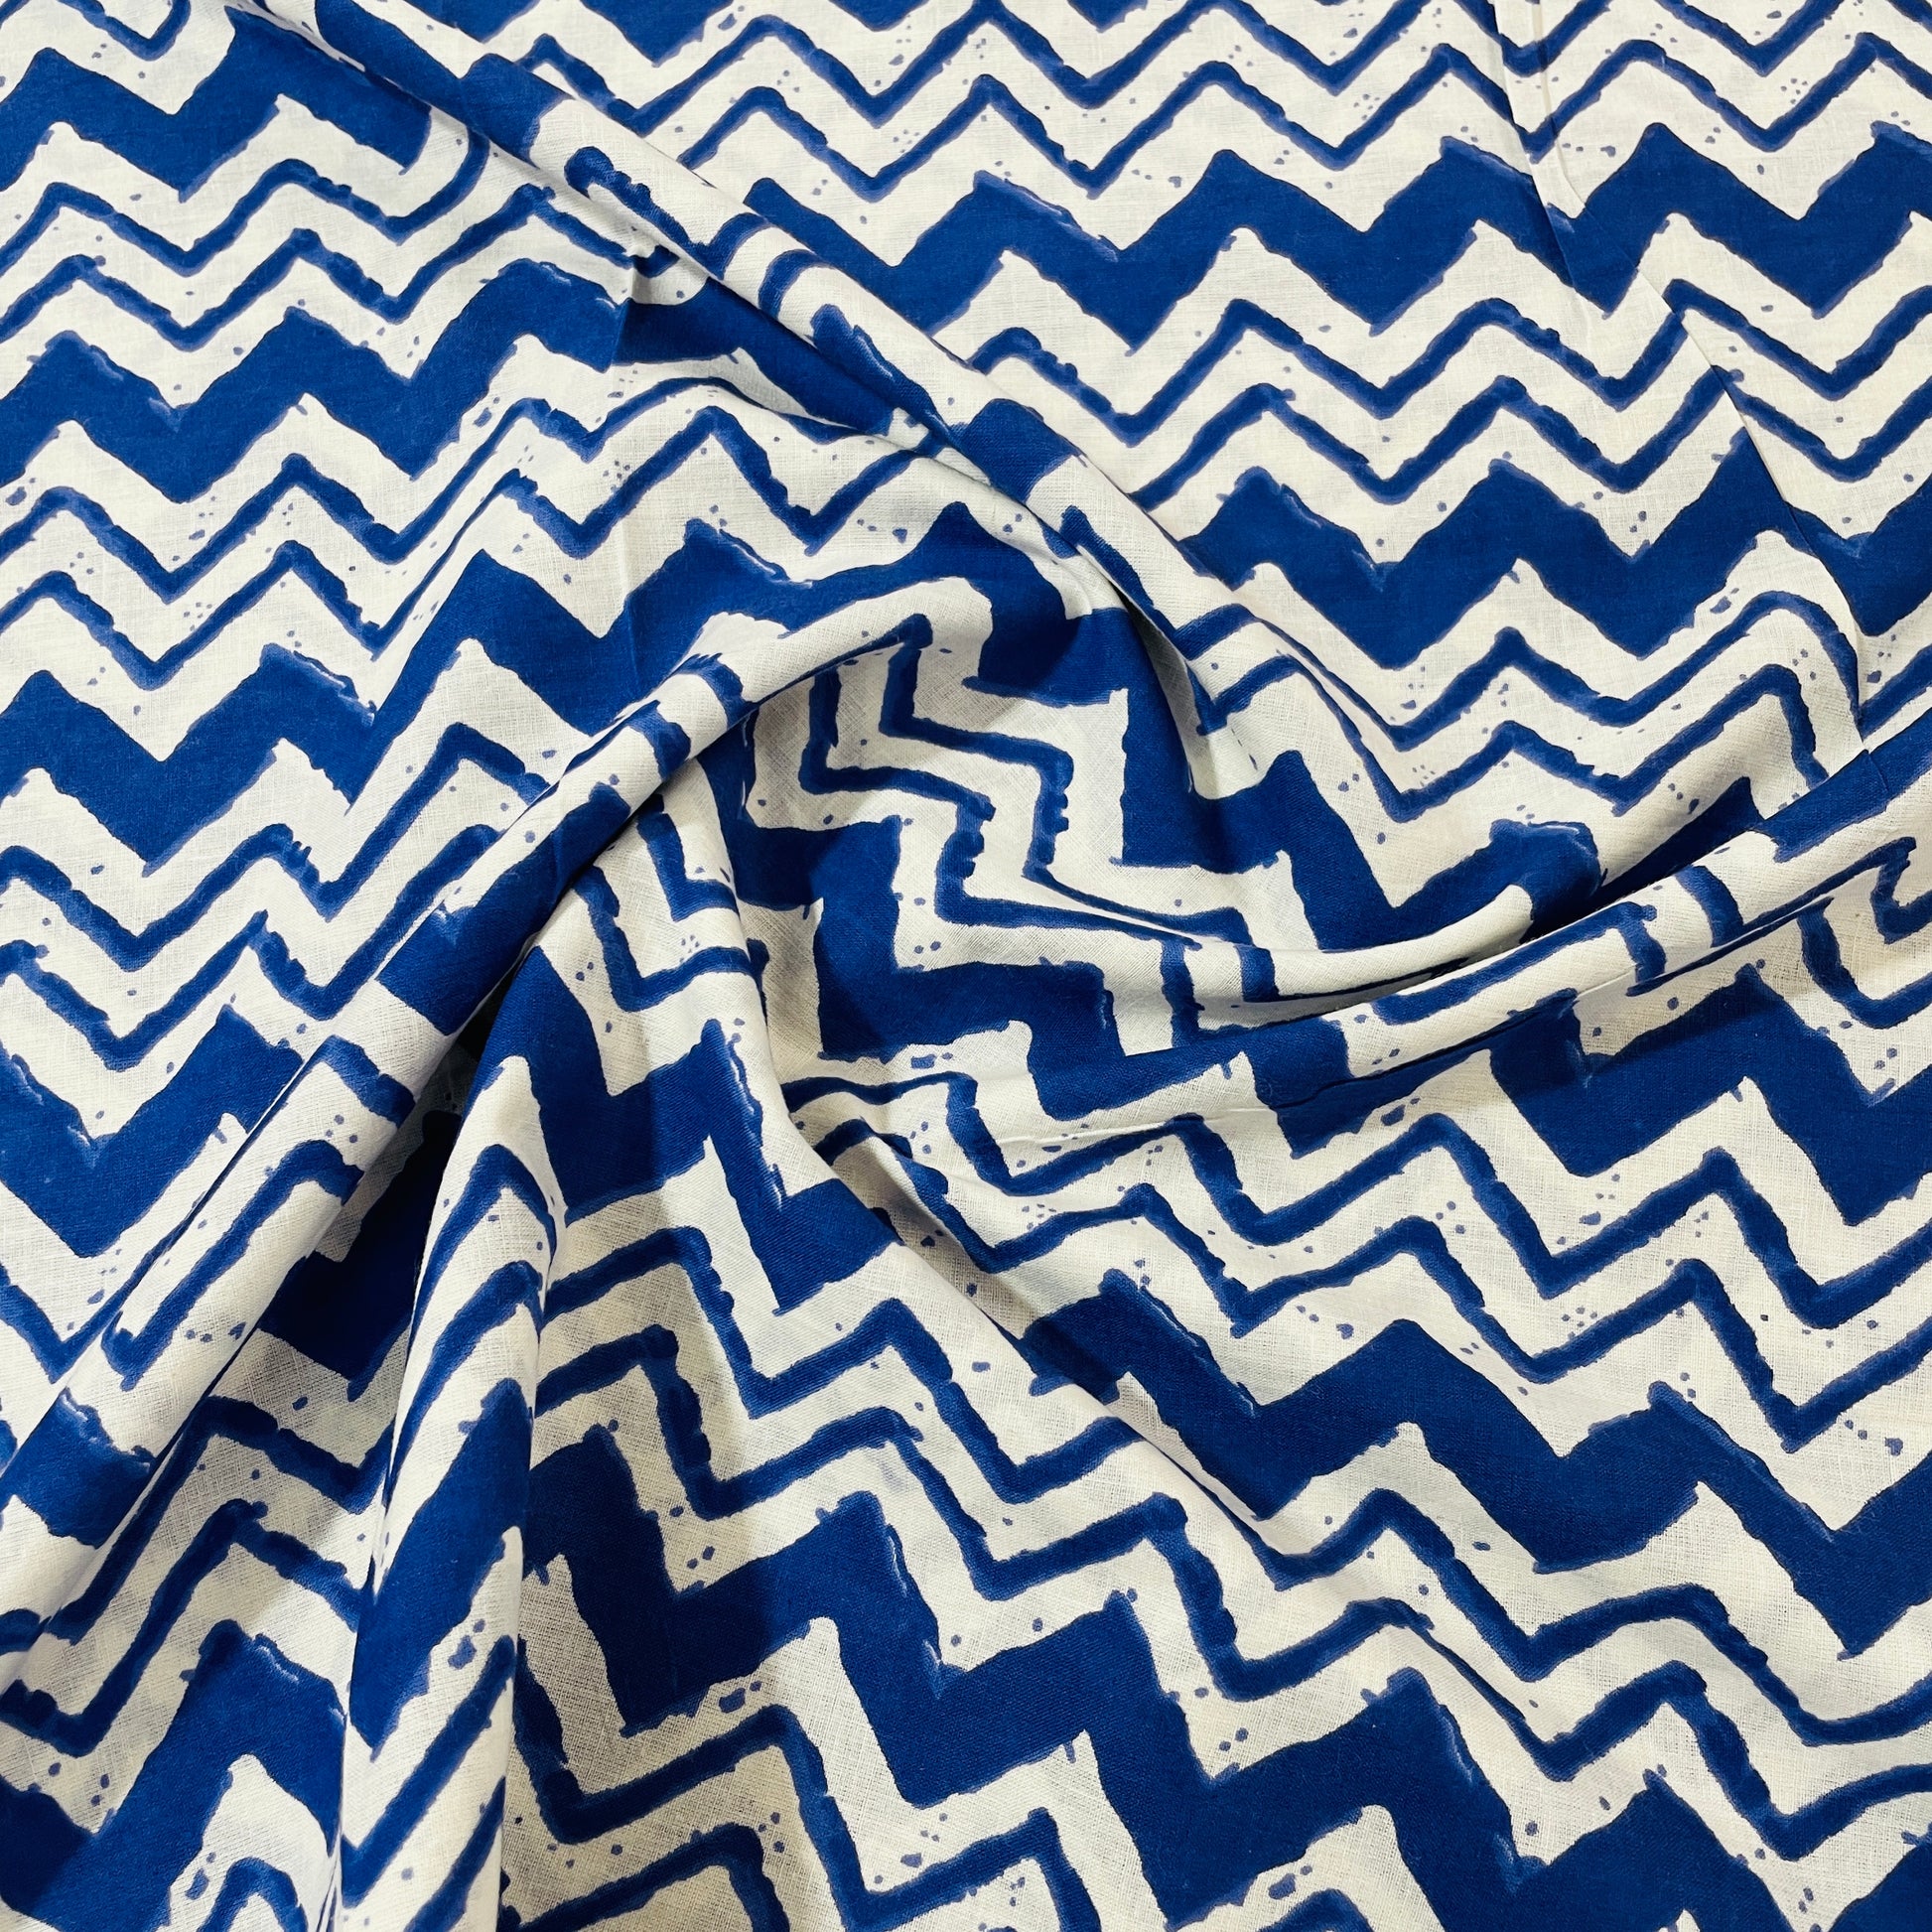 Blue & White Chevron Print Cotton Fabric - TradeUNO